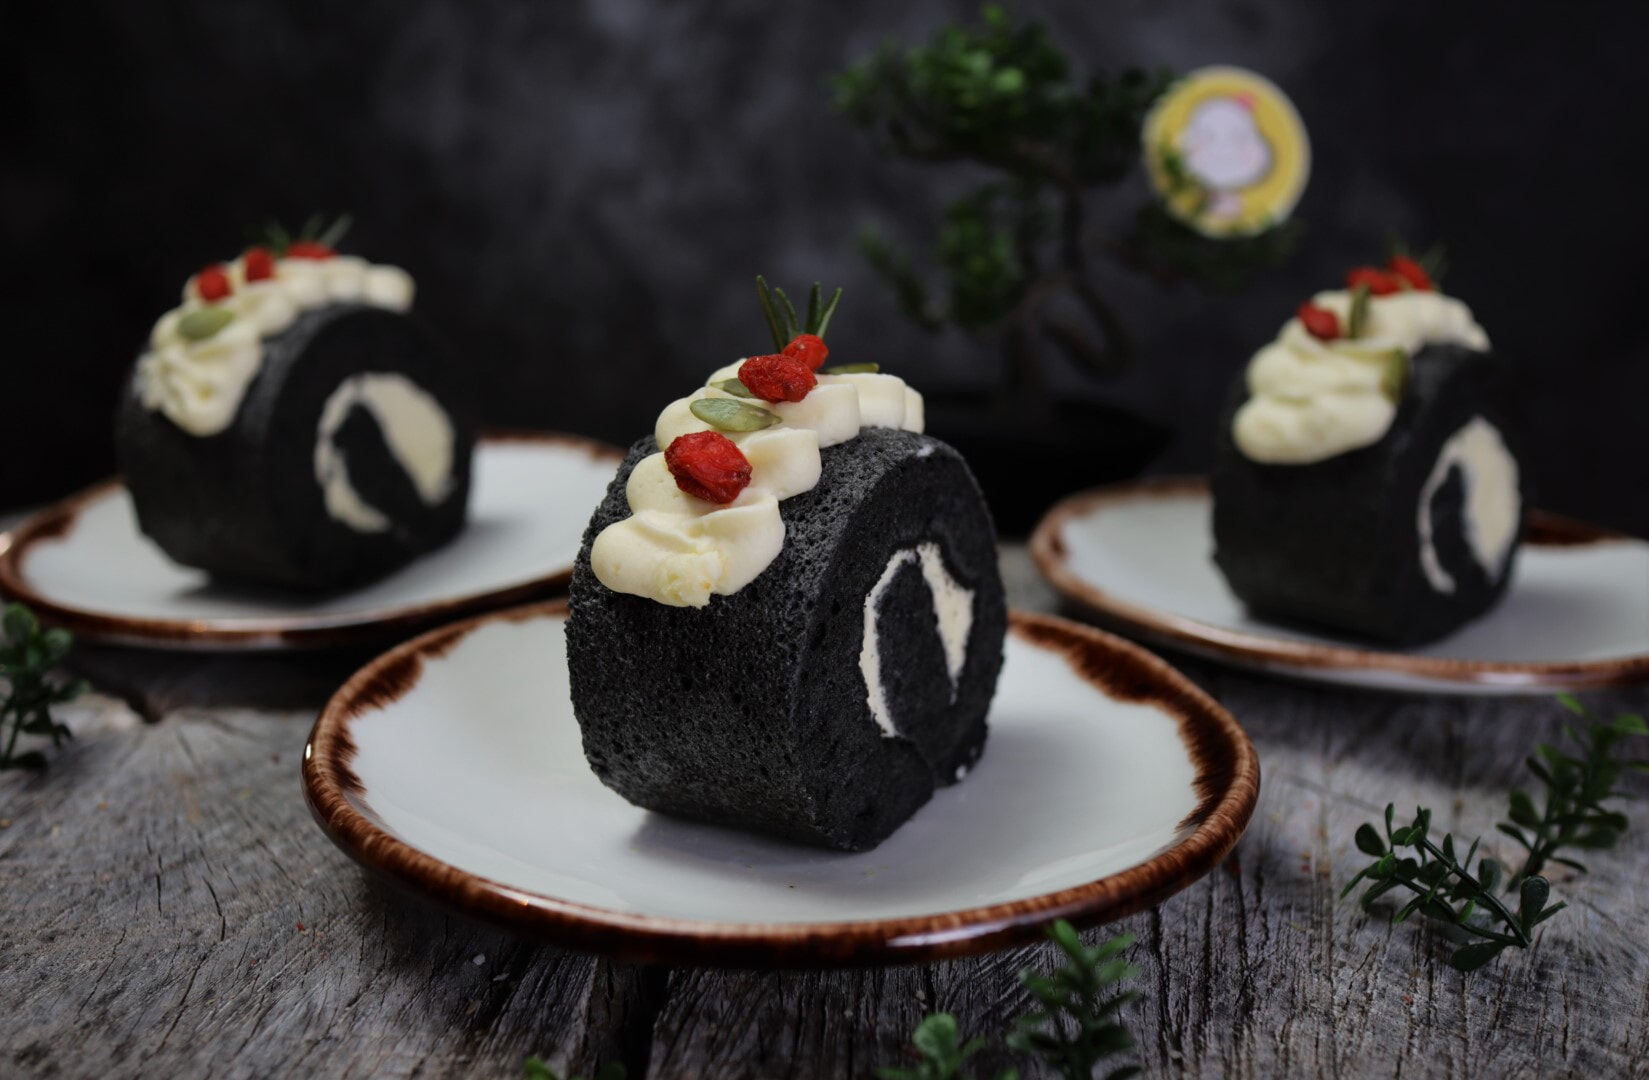 Cake Roll - Black sesame